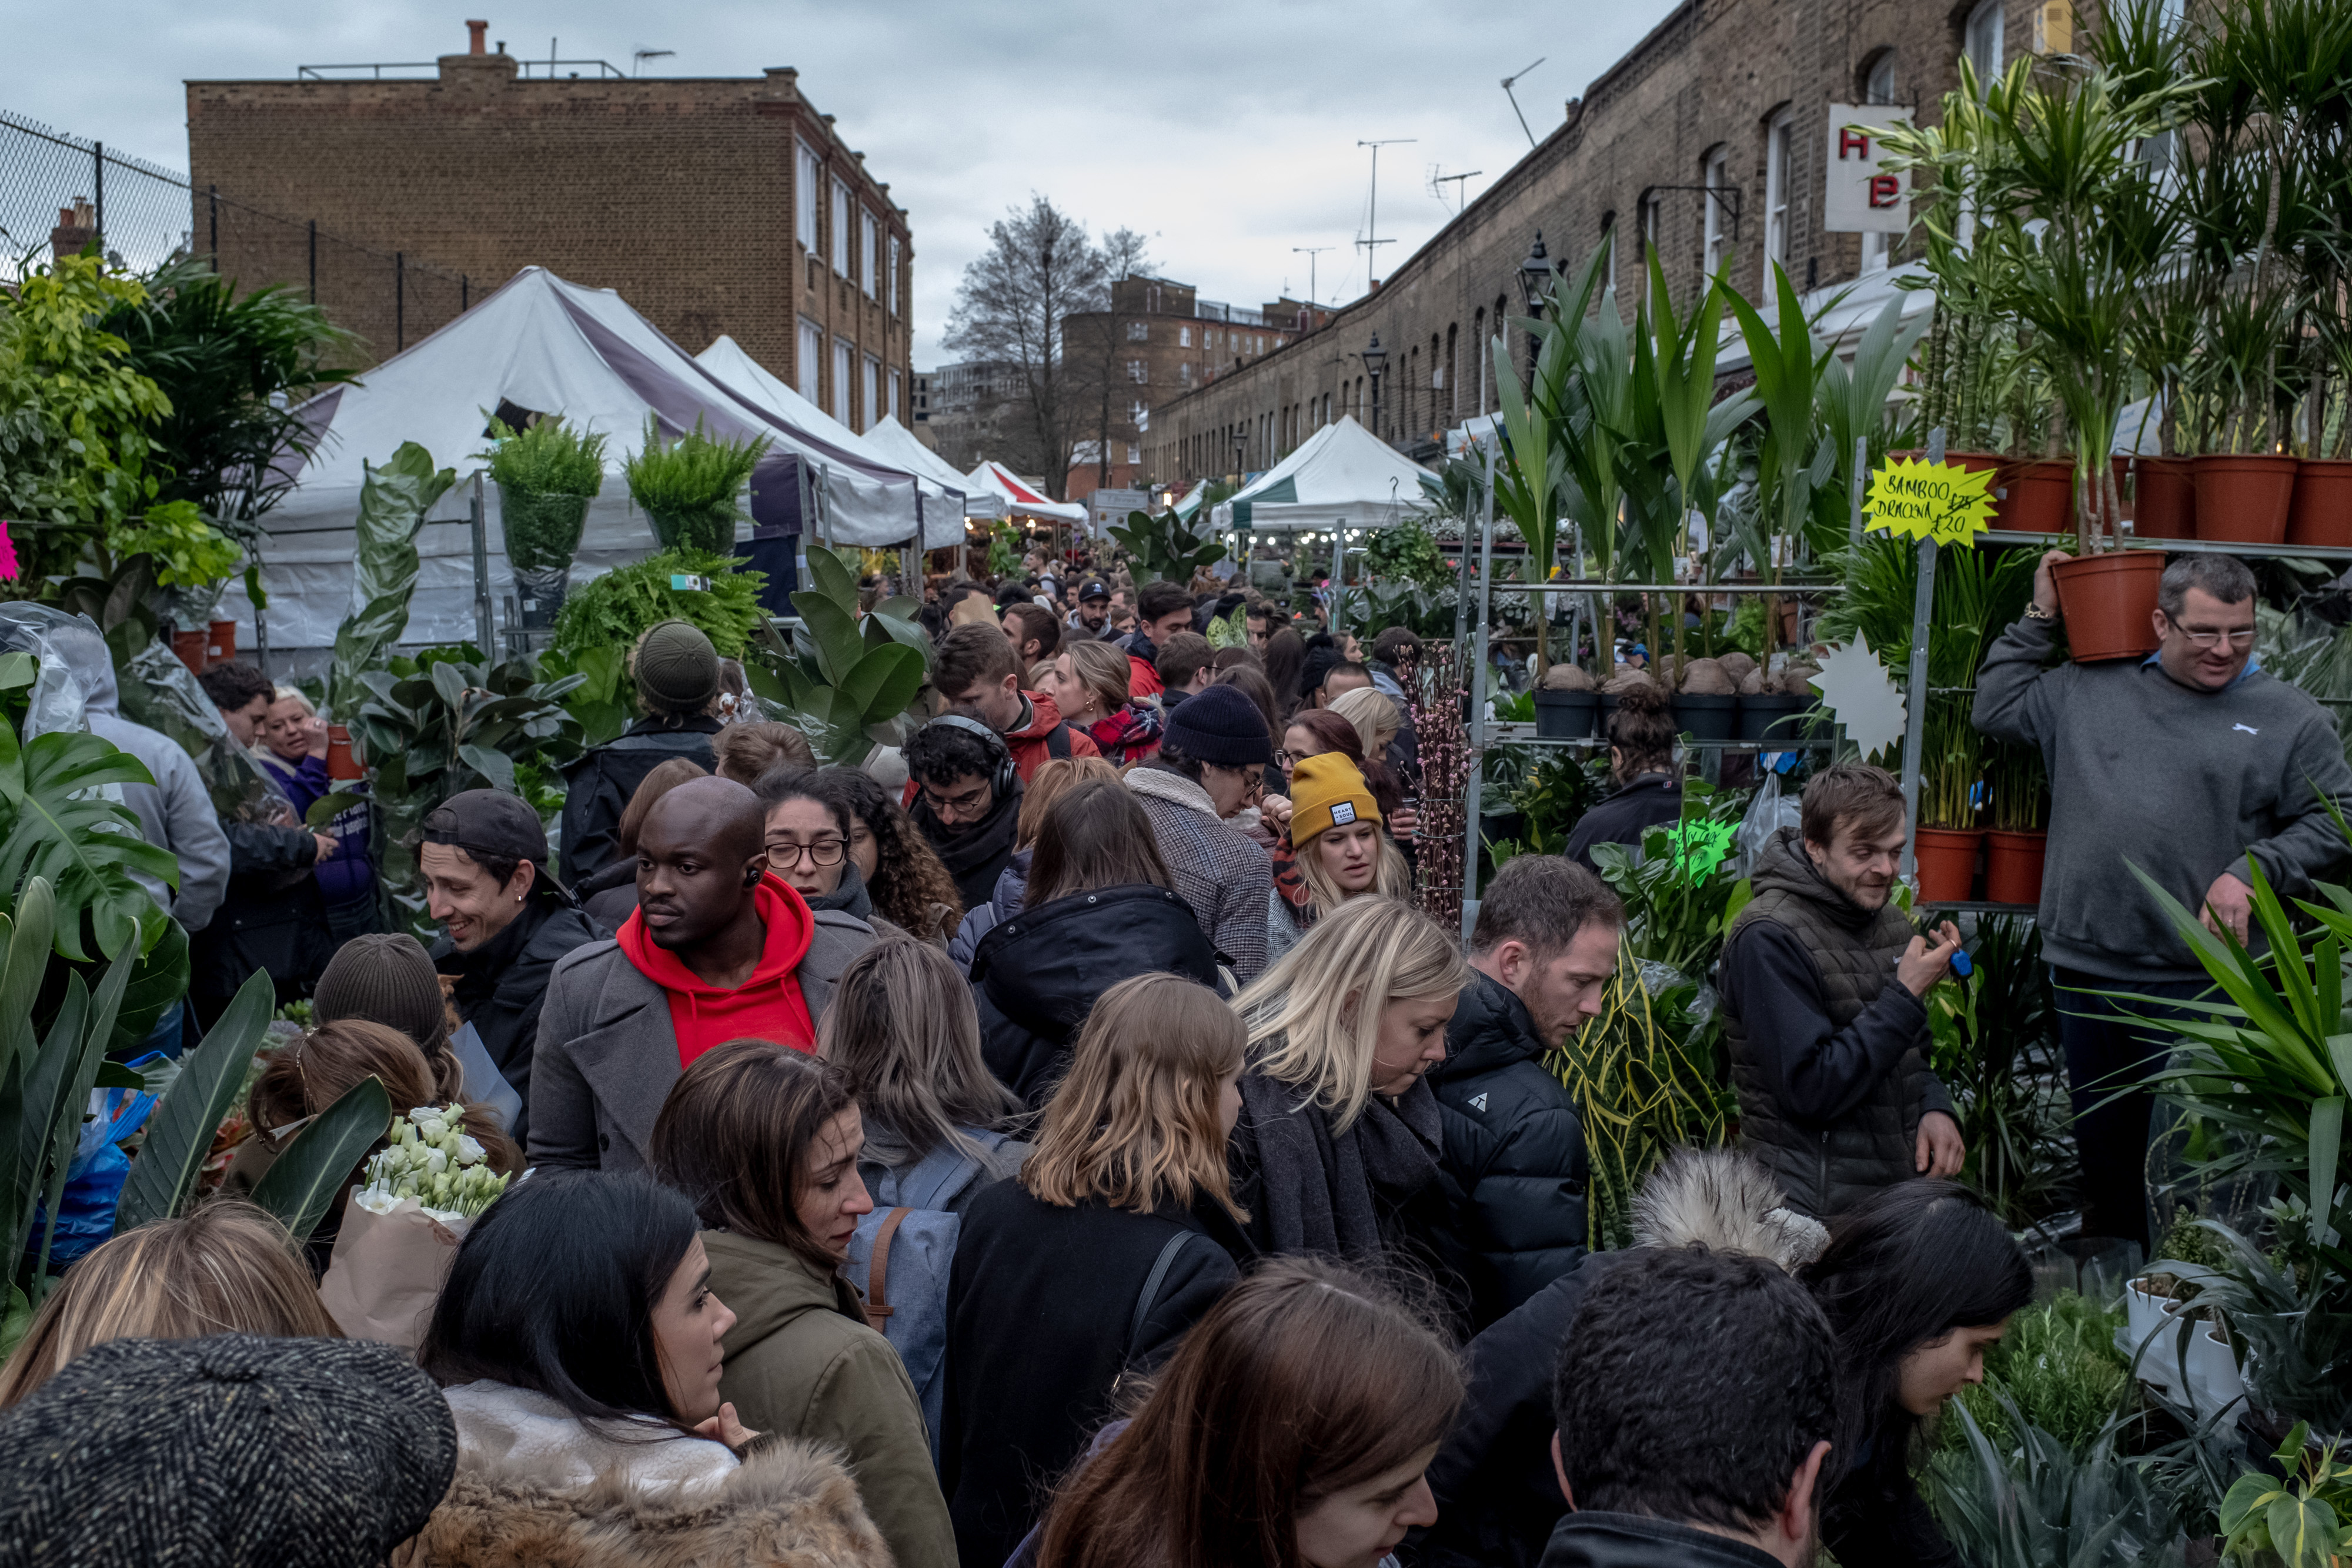 El concurrido mercado de flores de Columbia Road en Londres, el 15 de marzo de 2020. (Andrew Testa/The New York Times)